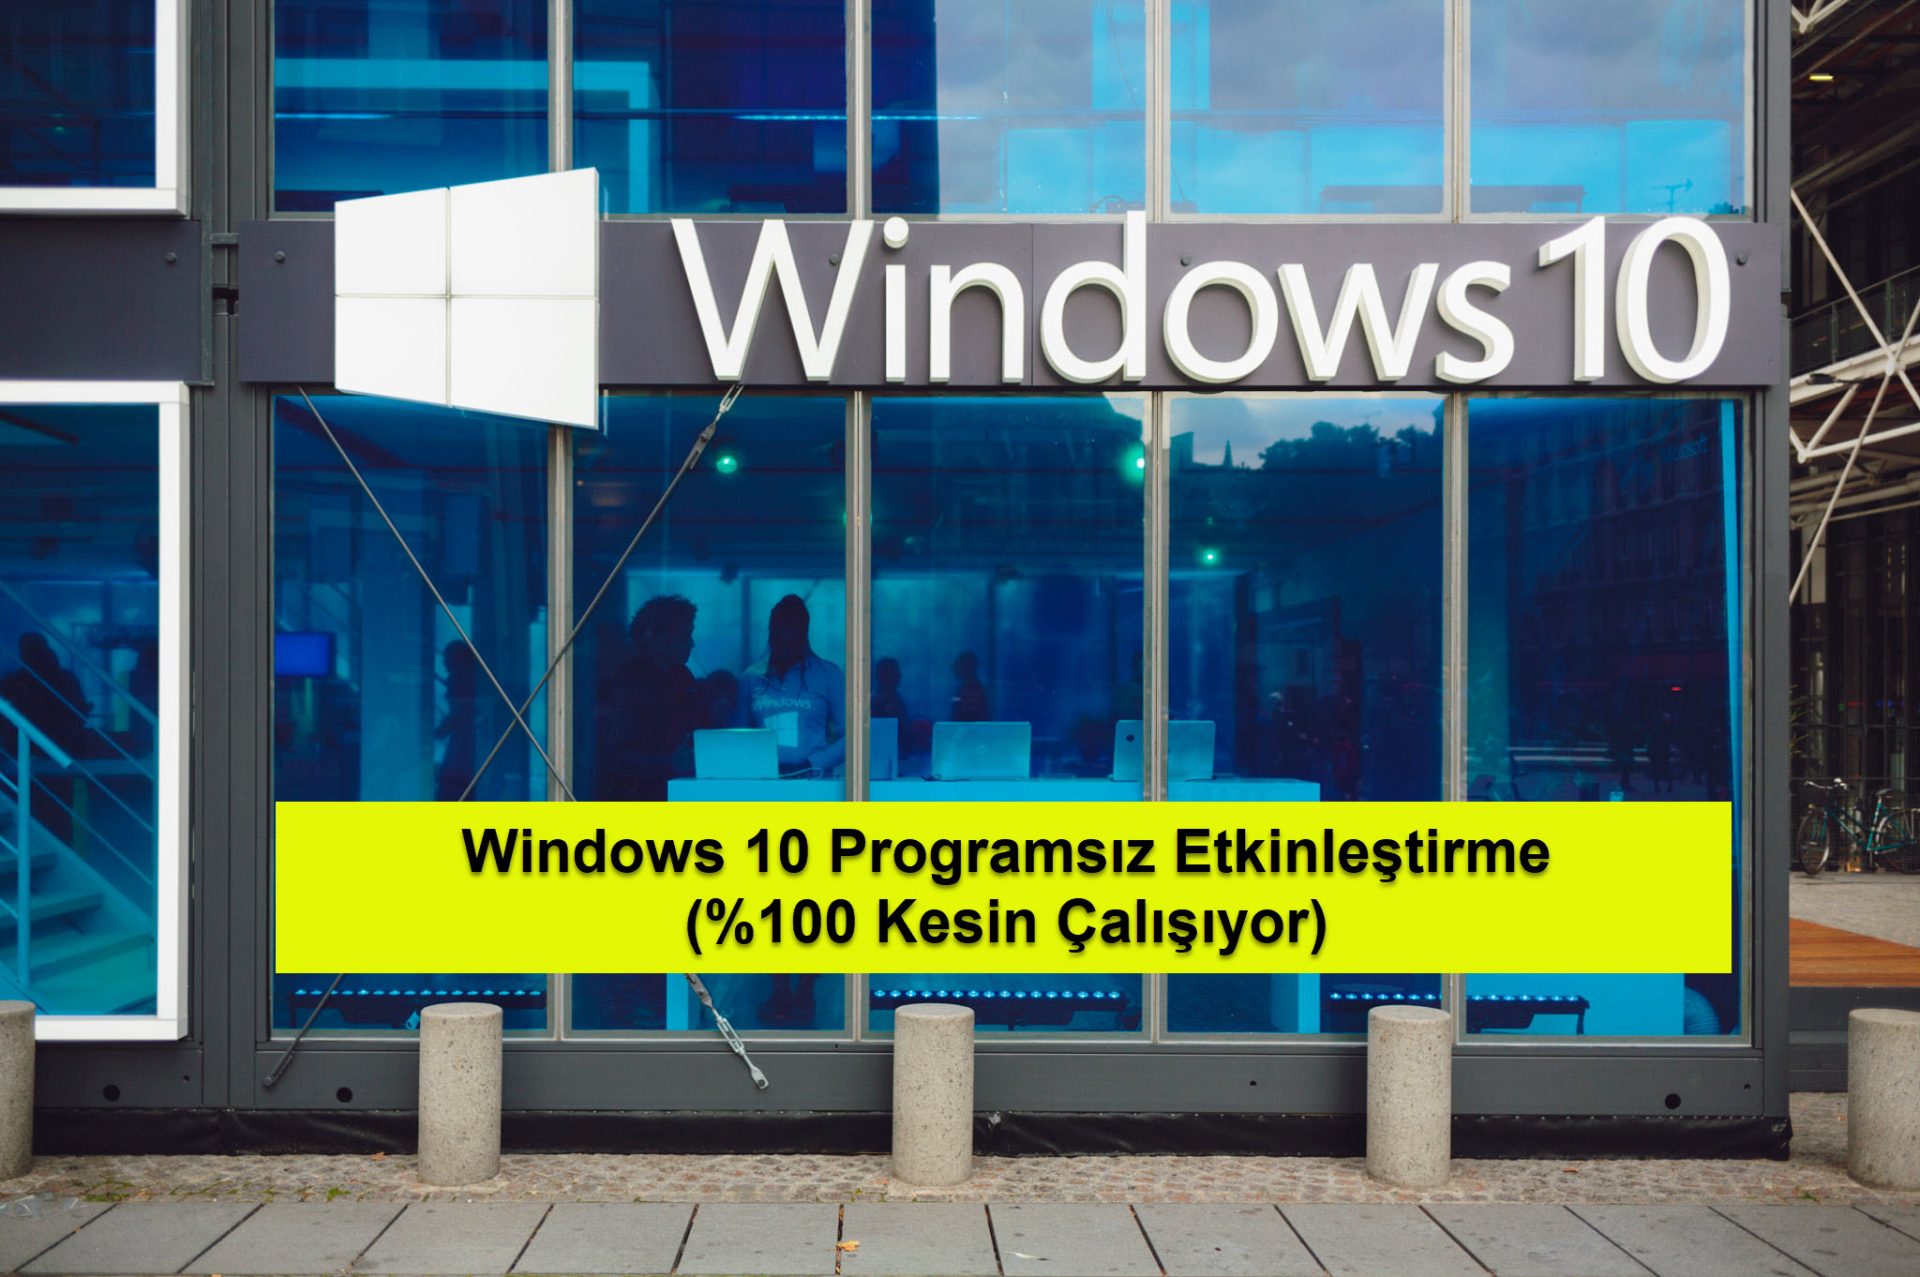 Windows 10 Programsiz Etkinlestirme 17